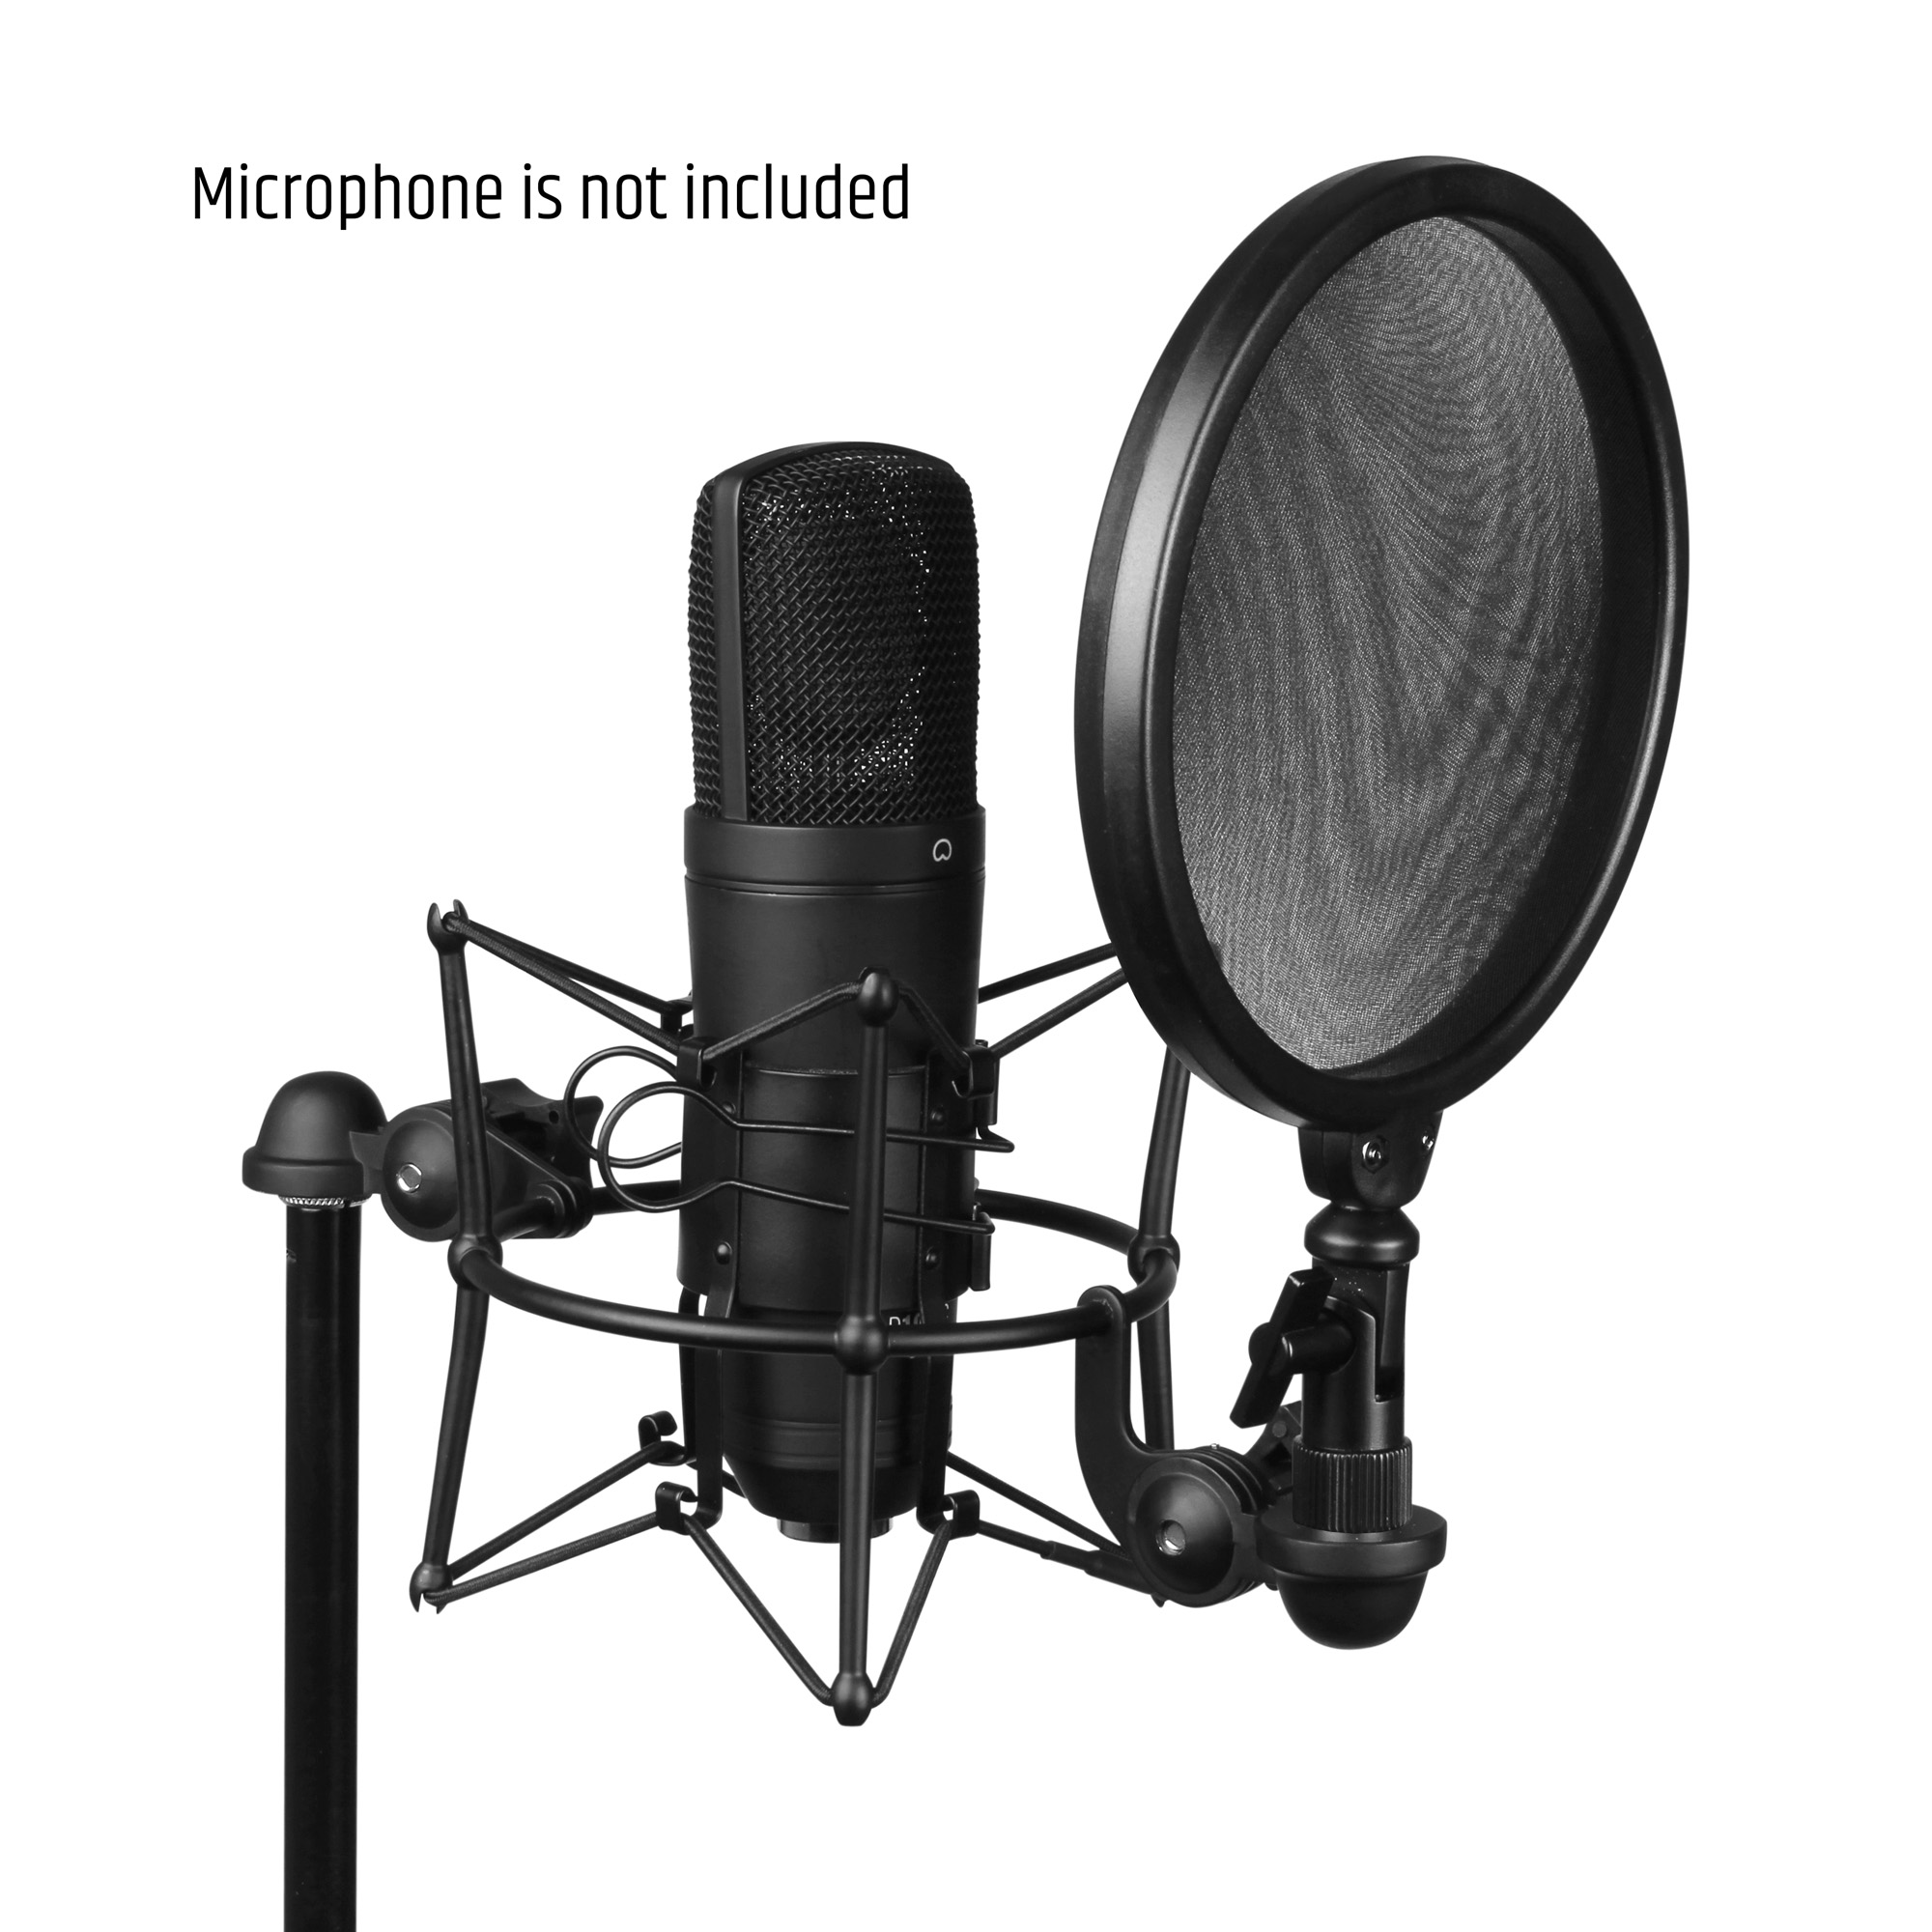 Filtre anti-pop, couvercle de pare-brise de microphone en maille métallique  professionnel à trois couches